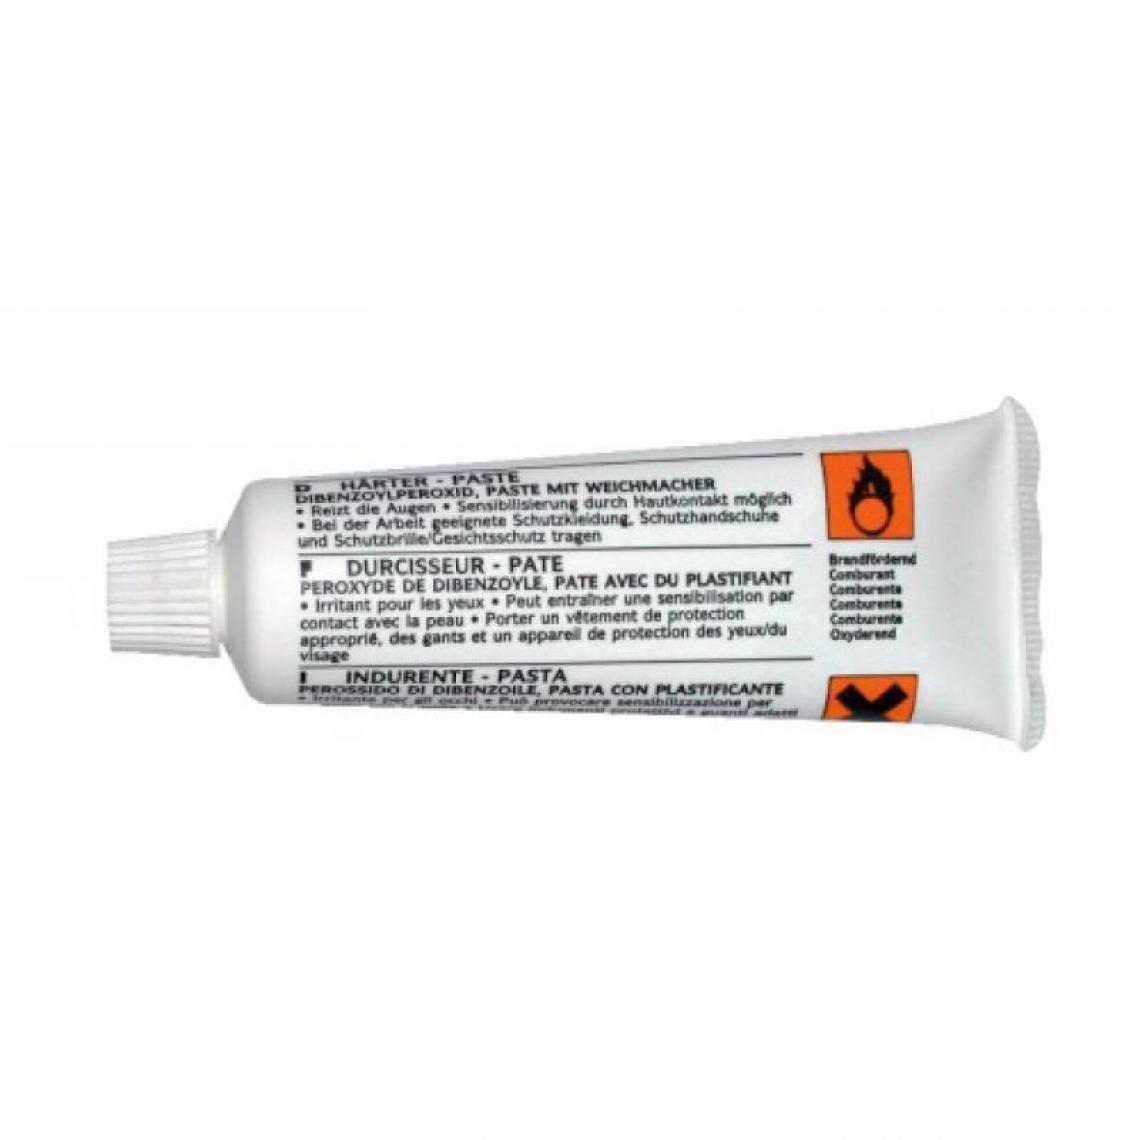 Sinto - Durcisseur pour mastic Sintobois, tube de 30 ml - Mastic, silicone, joint